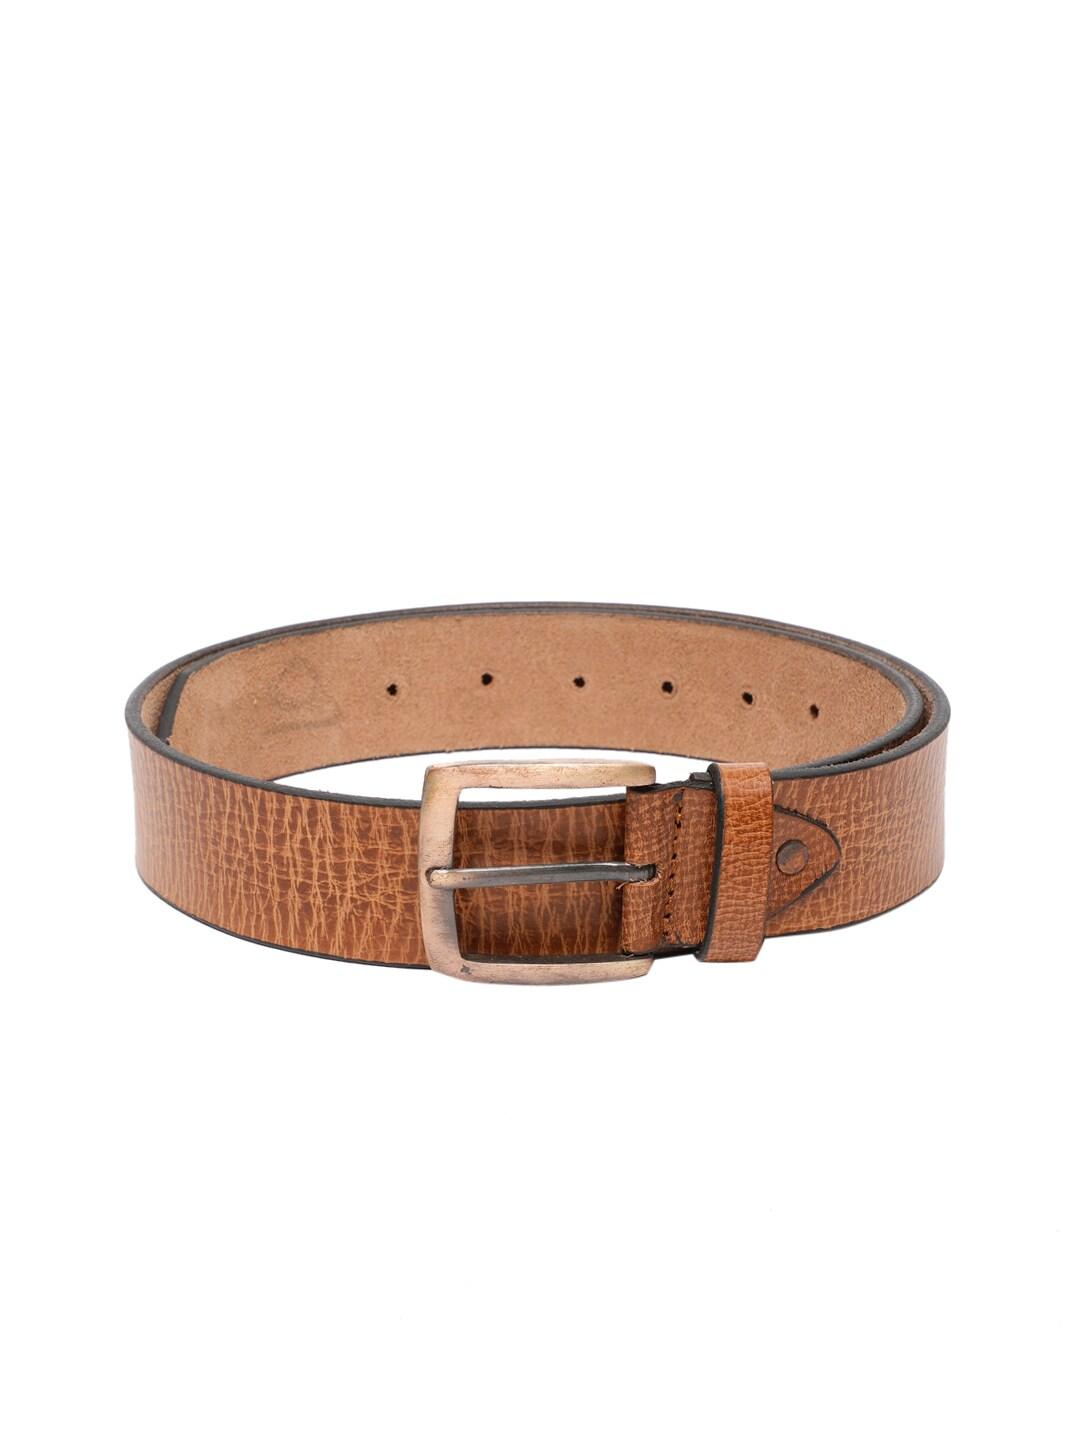 spykar-men-brown-genuine-leather-textured-belt